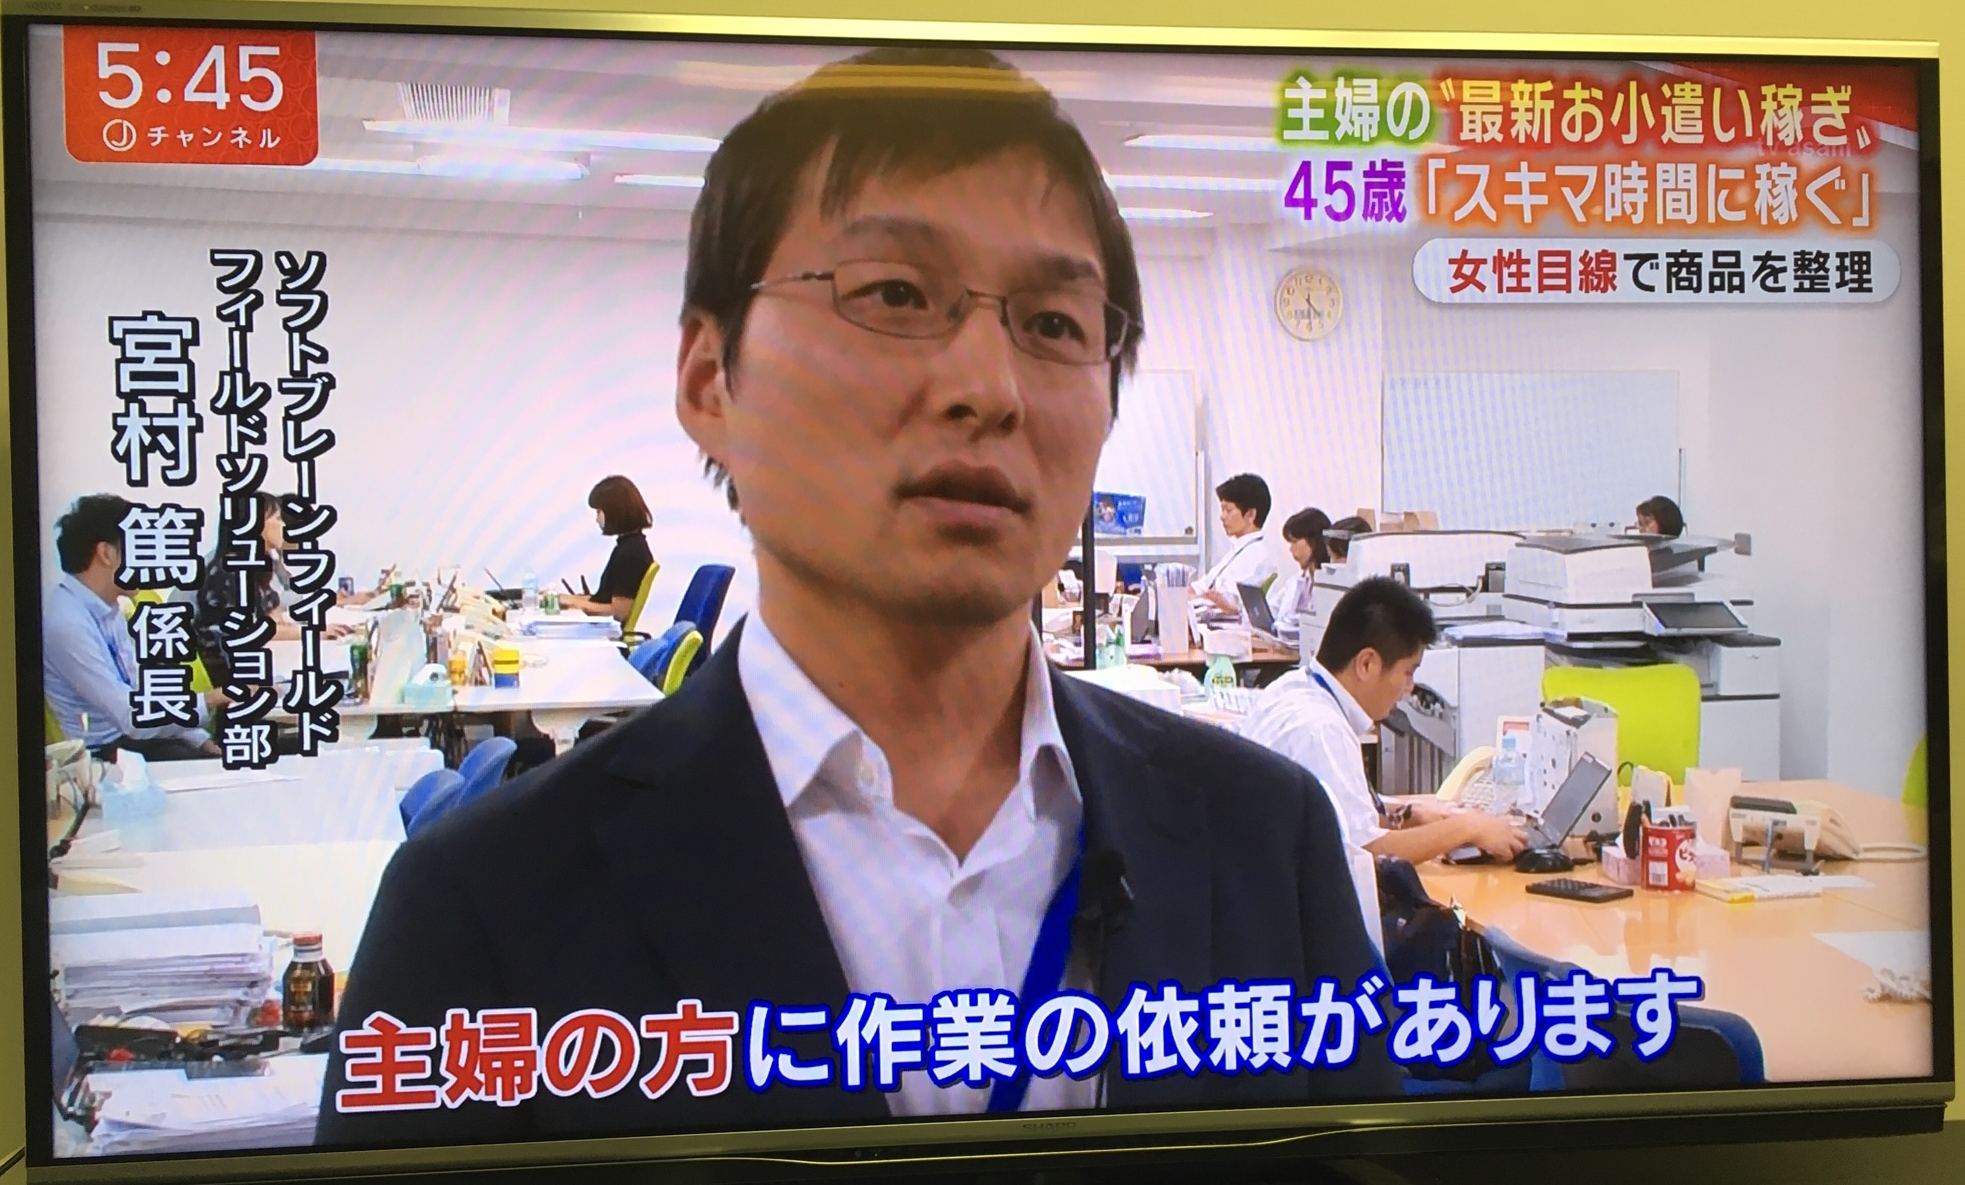 テレビ朝日「スーパーJチャンネル」で弊社のフィールド活動が「主婦の“最新お小遣い稼ぎ”」として紹介されました。